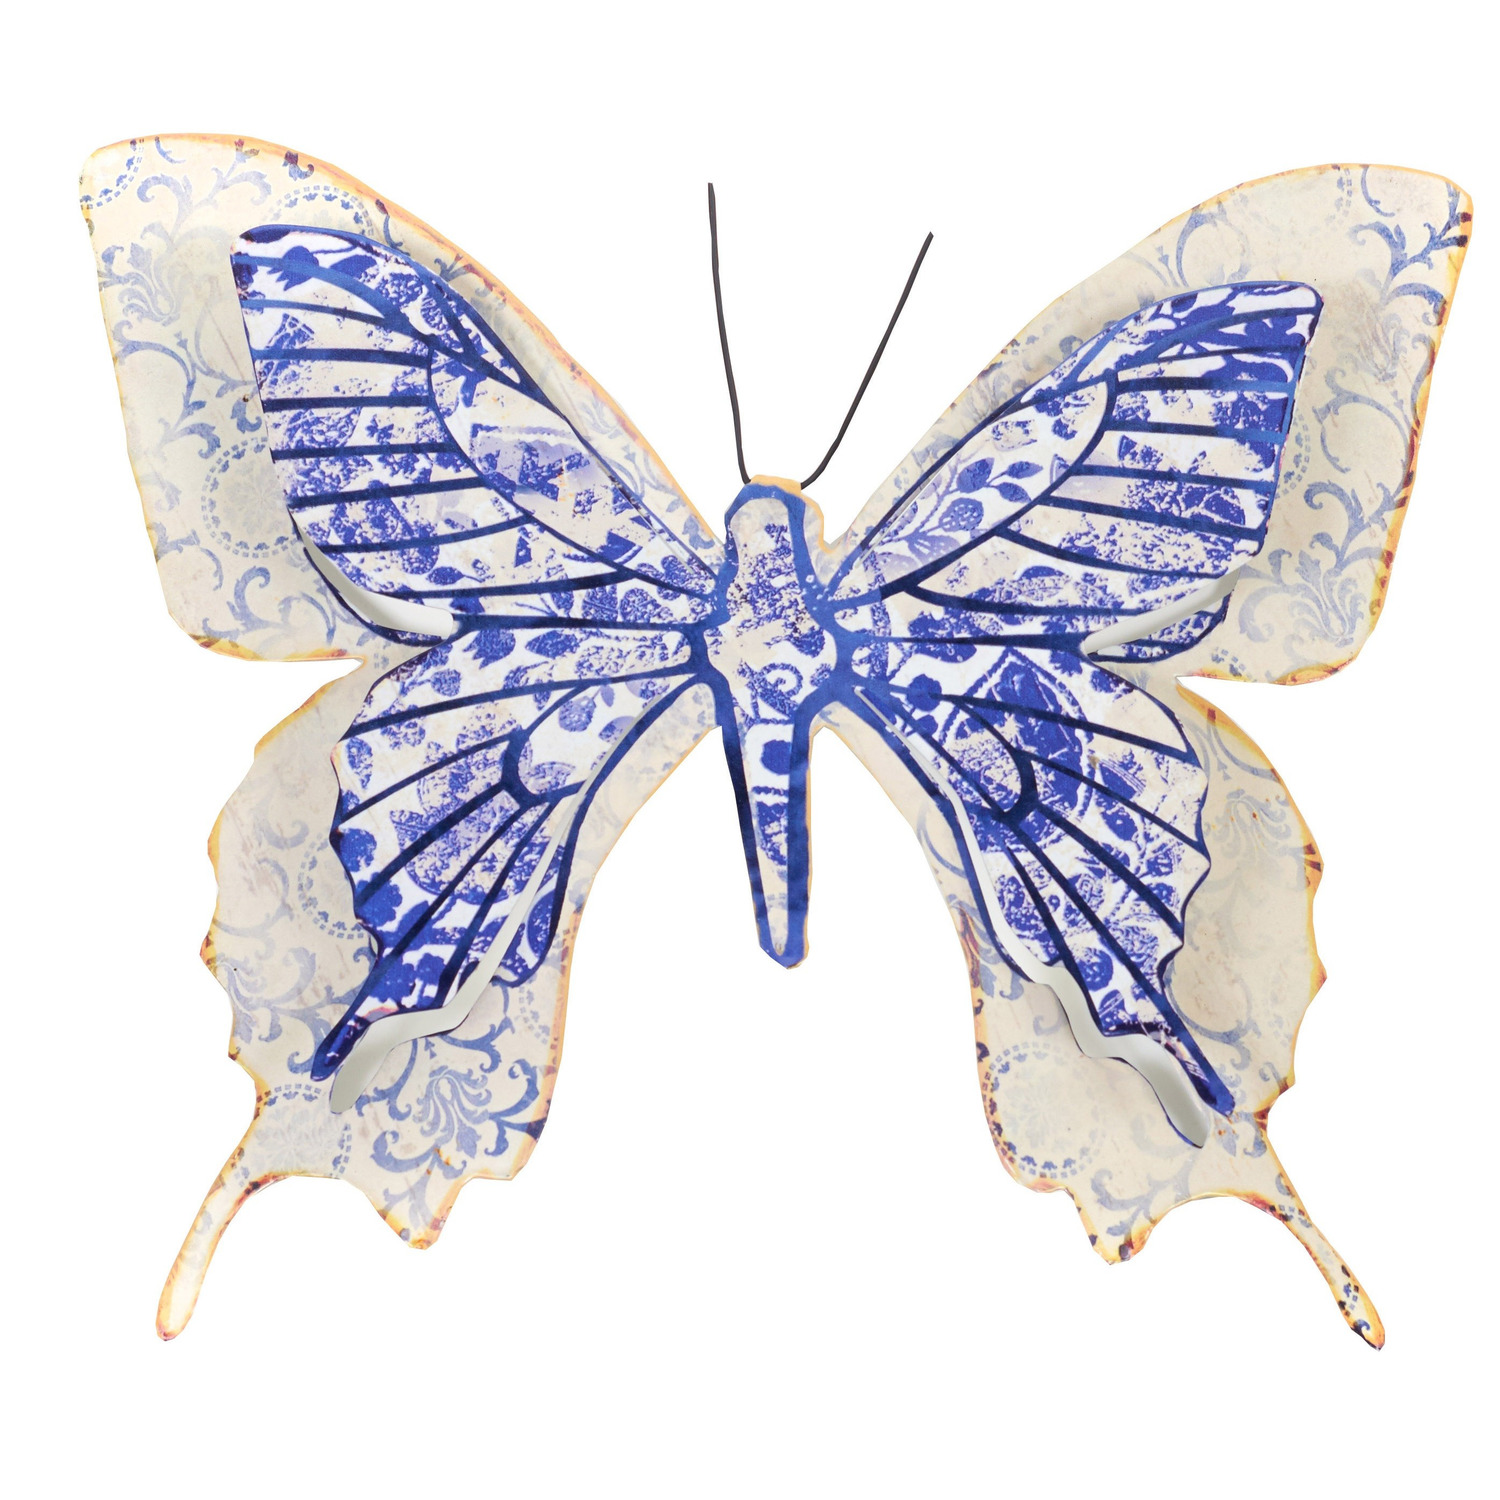 1x Blauw/witte metalen tuindecoratie vlinder 31 cm